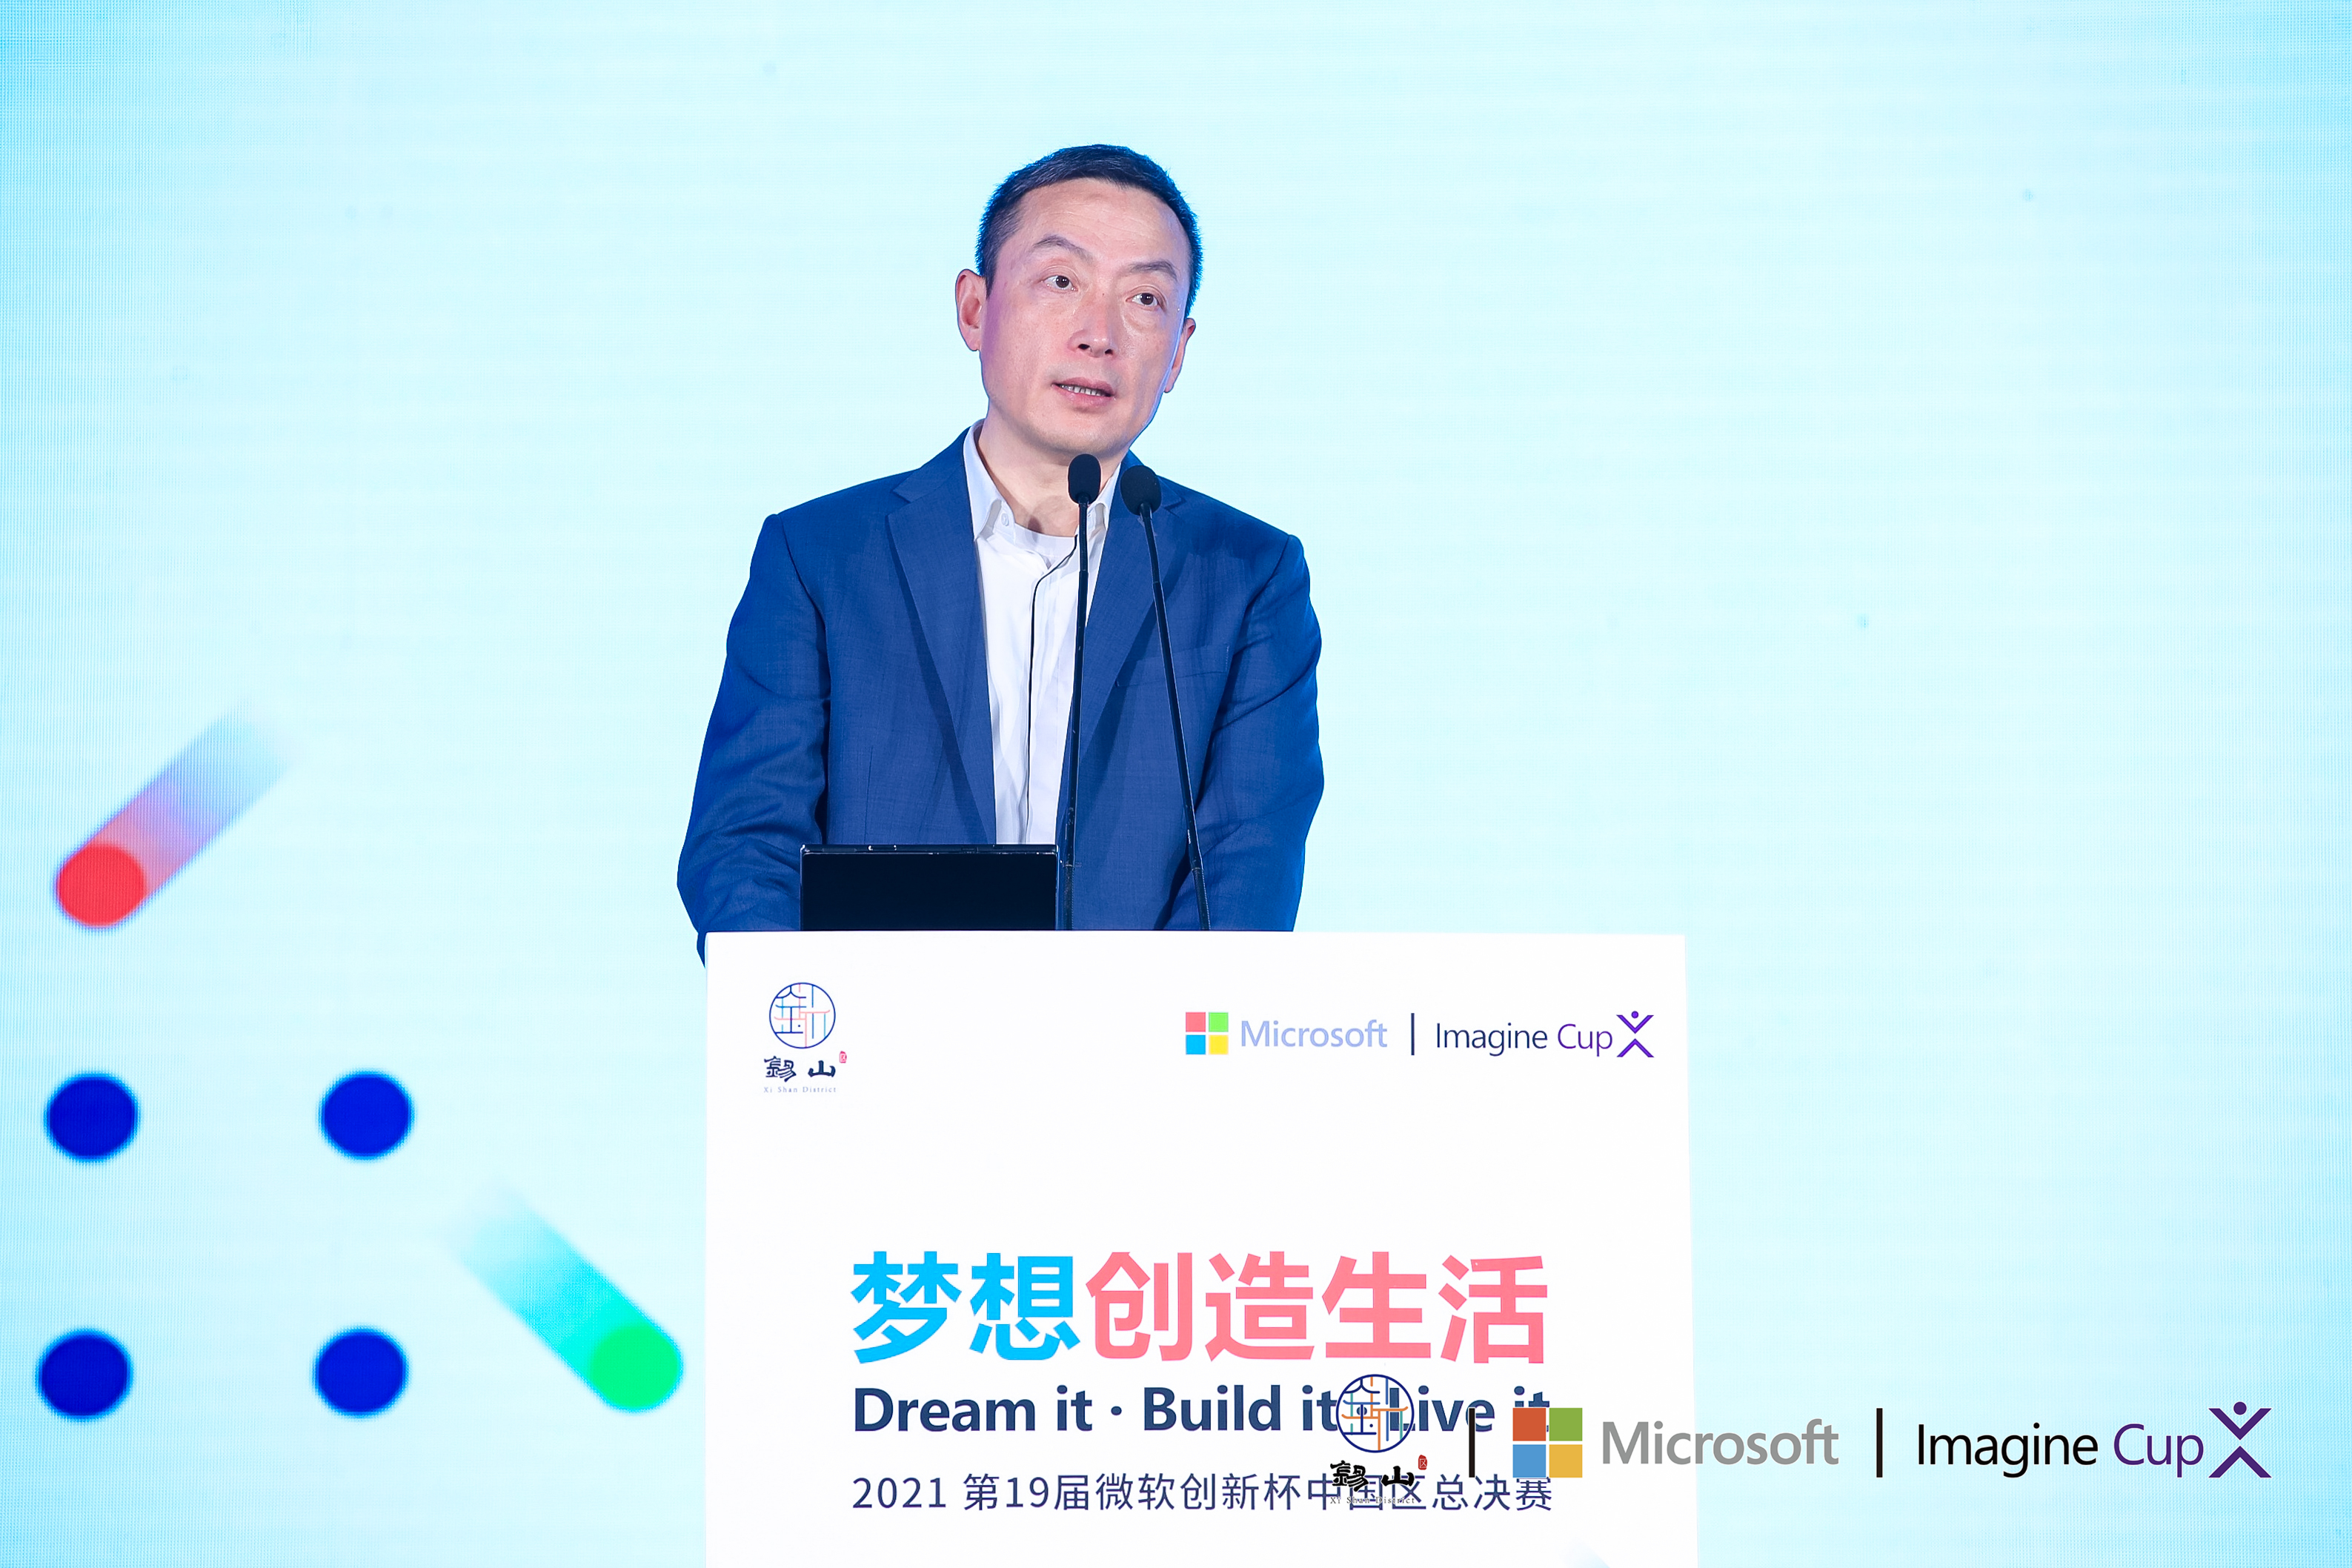 微软政府事业部总经理周默为2021微软“创新杯”中国区总决赛颁奖仪式致辞